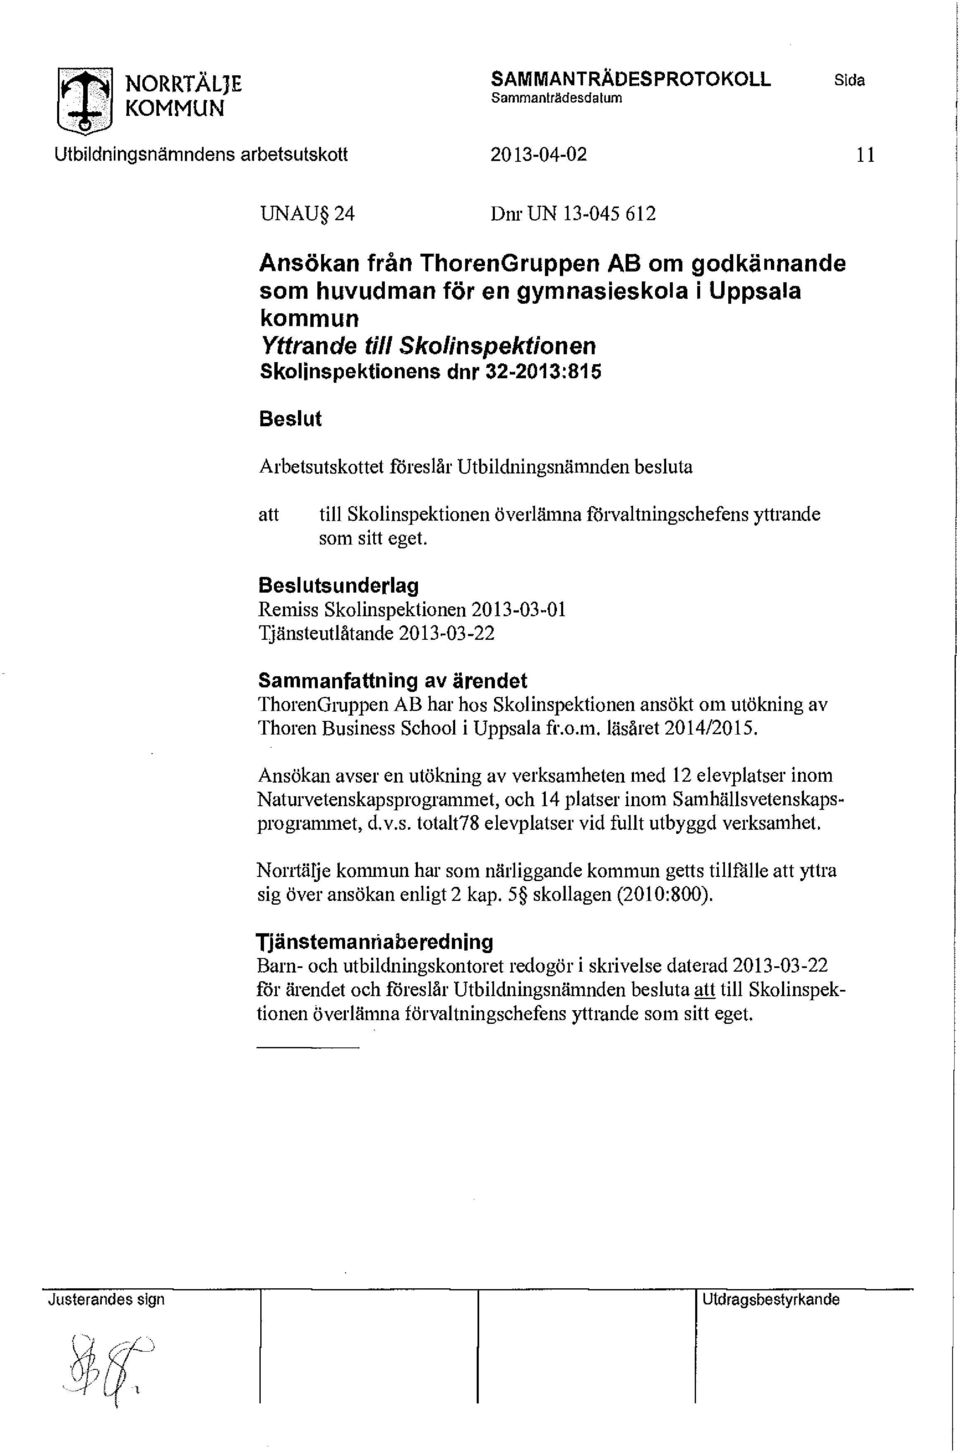 ansökt om utökning av Thoren Business School i Uppsala fr.o.m. läsåret 2014/2015.